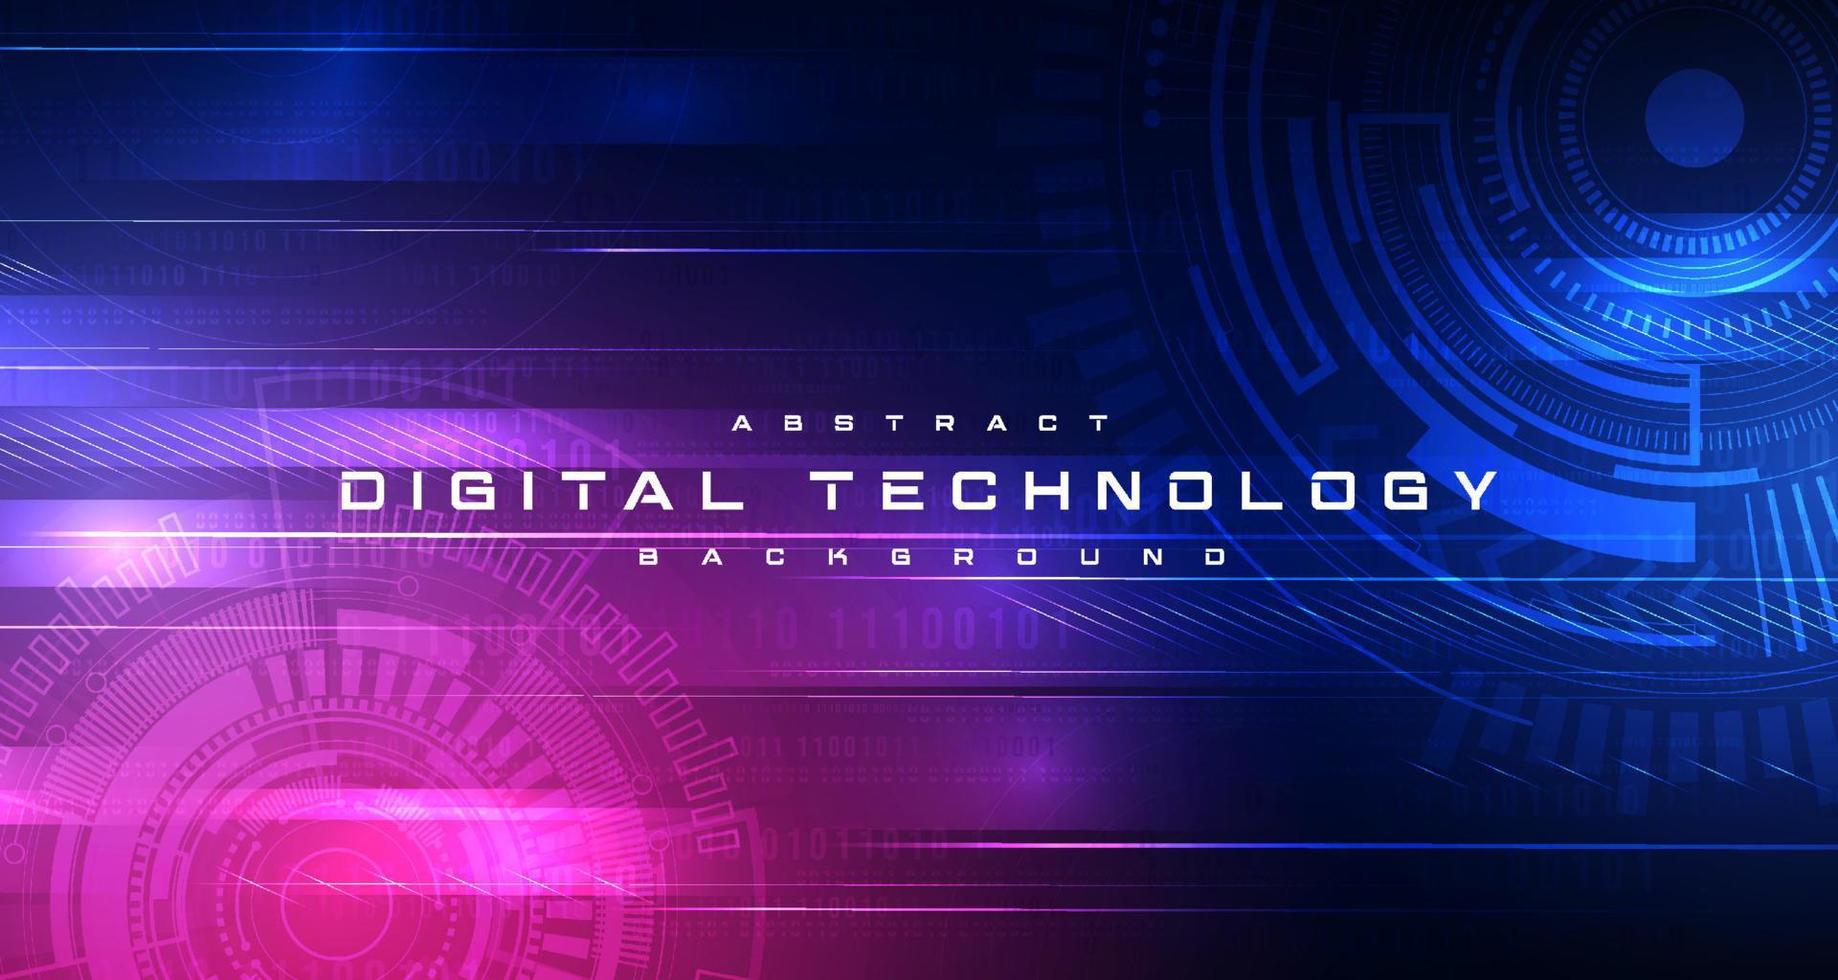 circuito futurista de tecnologia digital abstrato fundo rosa azul, tecnologia de ciberciência, futuro de comunicação de inovação, ai big data, conexão de rede de internet, vetor de ilustração de alta tecnologia em nuvem